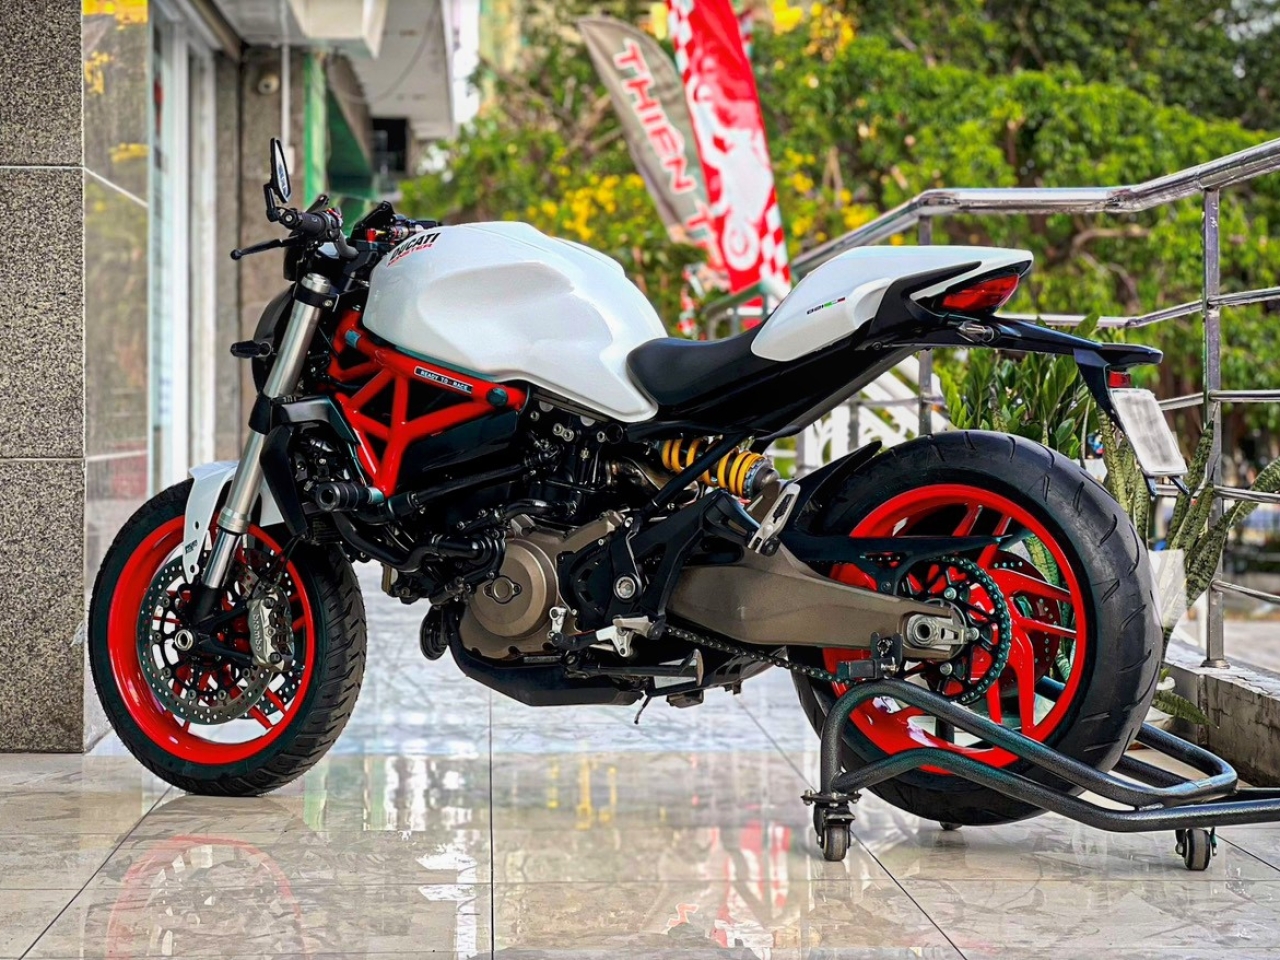 296. Ducati Monster 821 2017